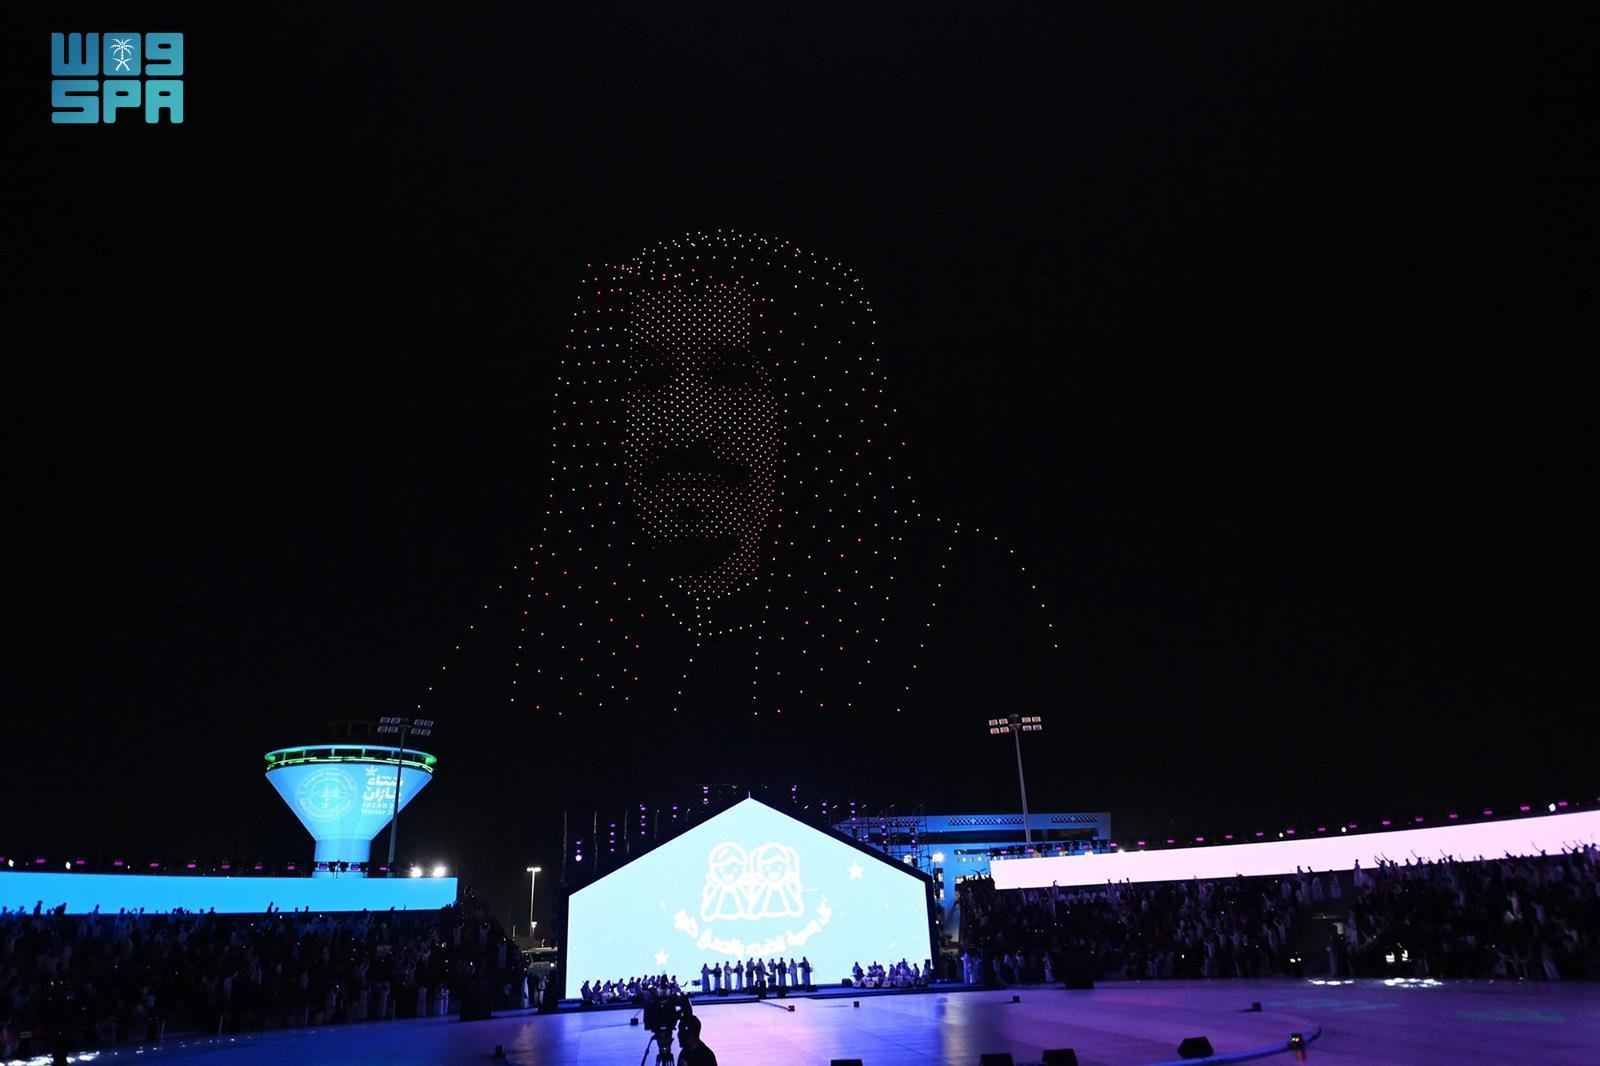 عروض الدرون الضوئية تبهر زوار مهرجان شتاء جازان